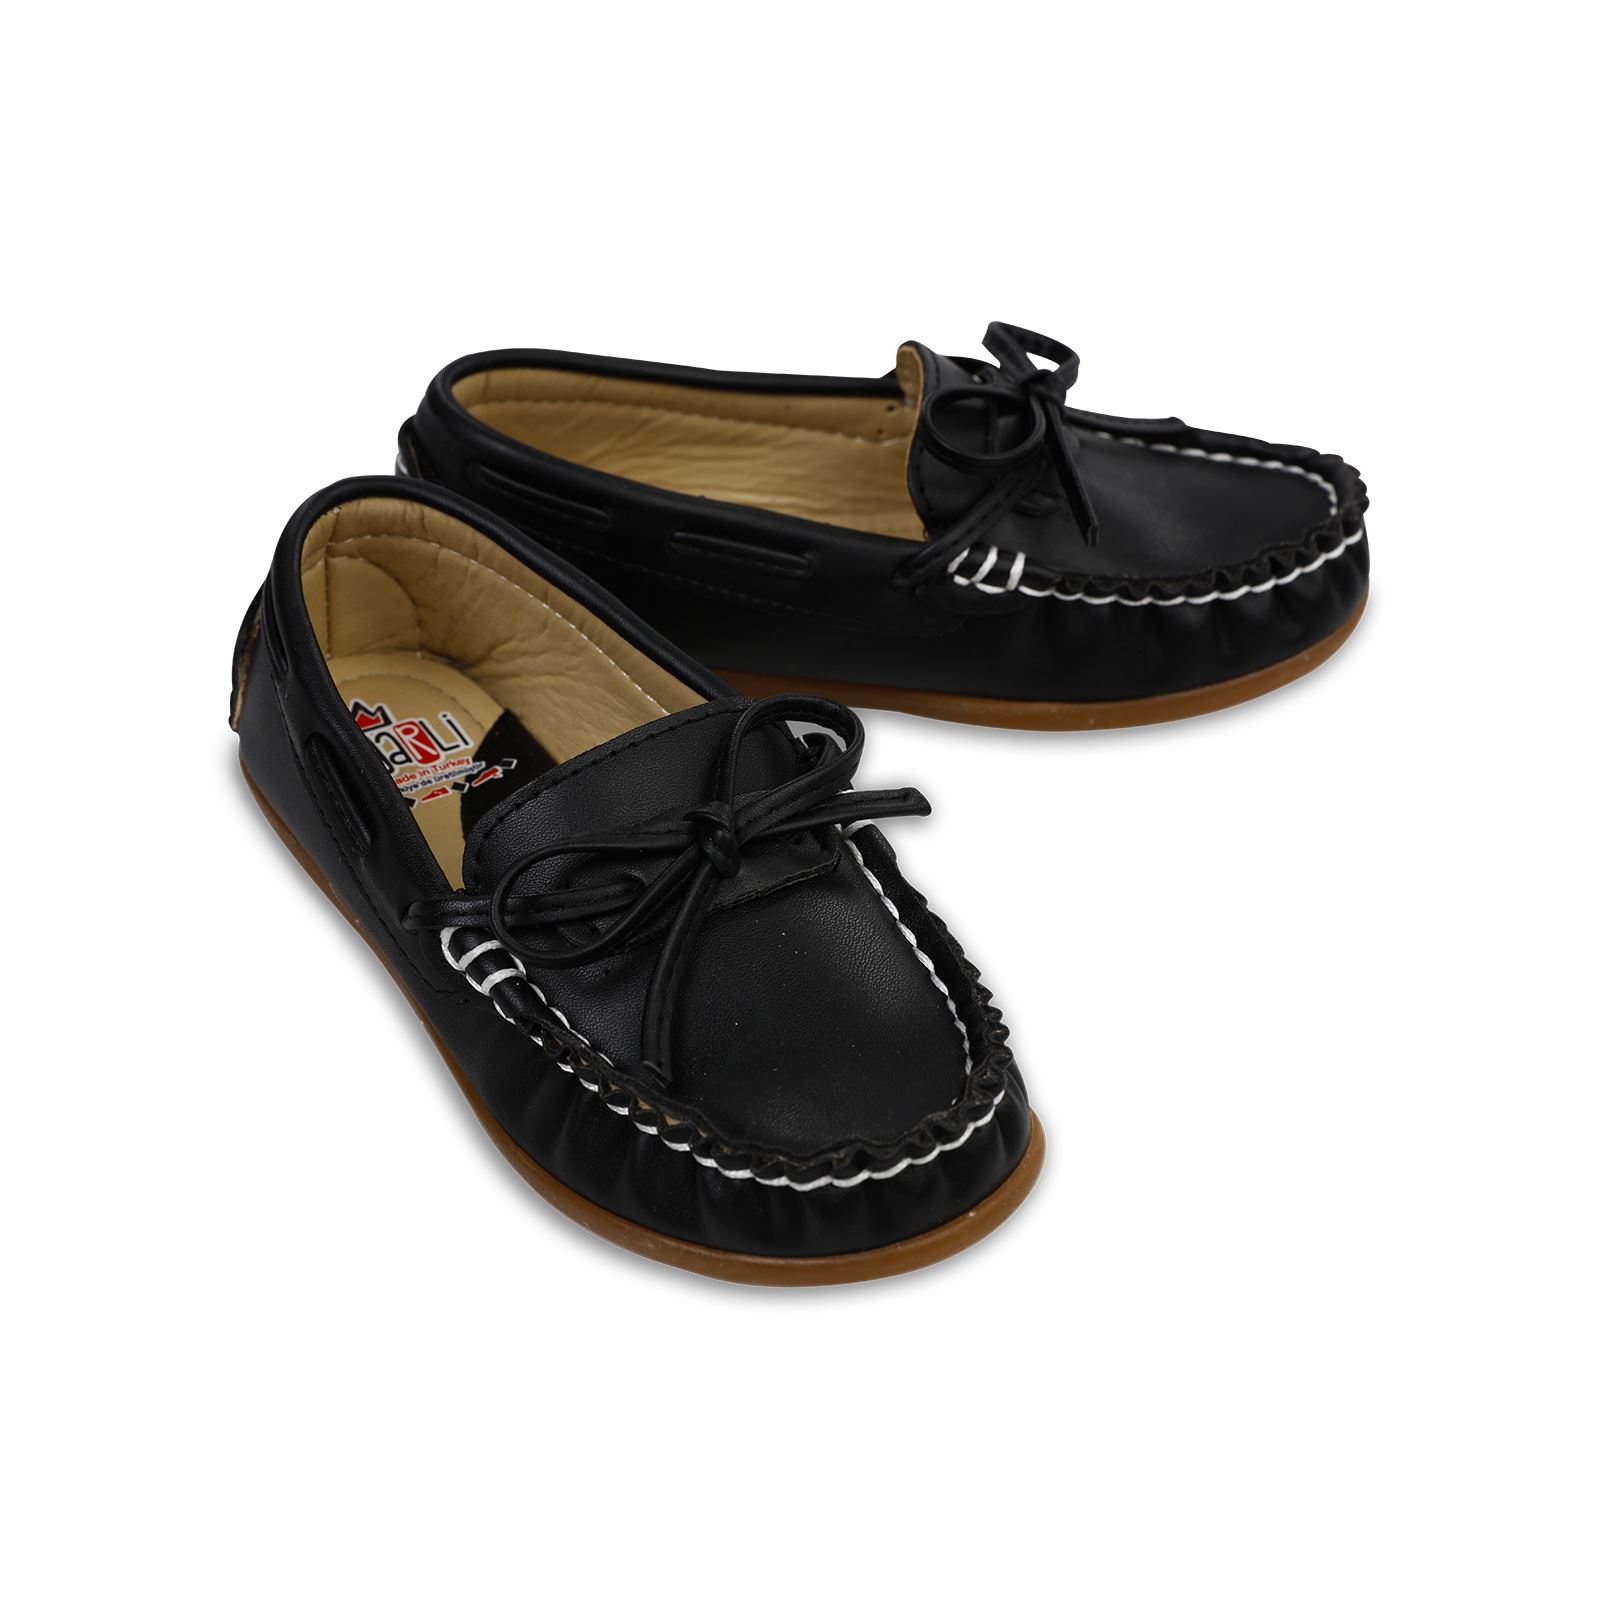 Harli Erkek Çocuk Klasik Ayakkabı 26-30 Numara Siyah